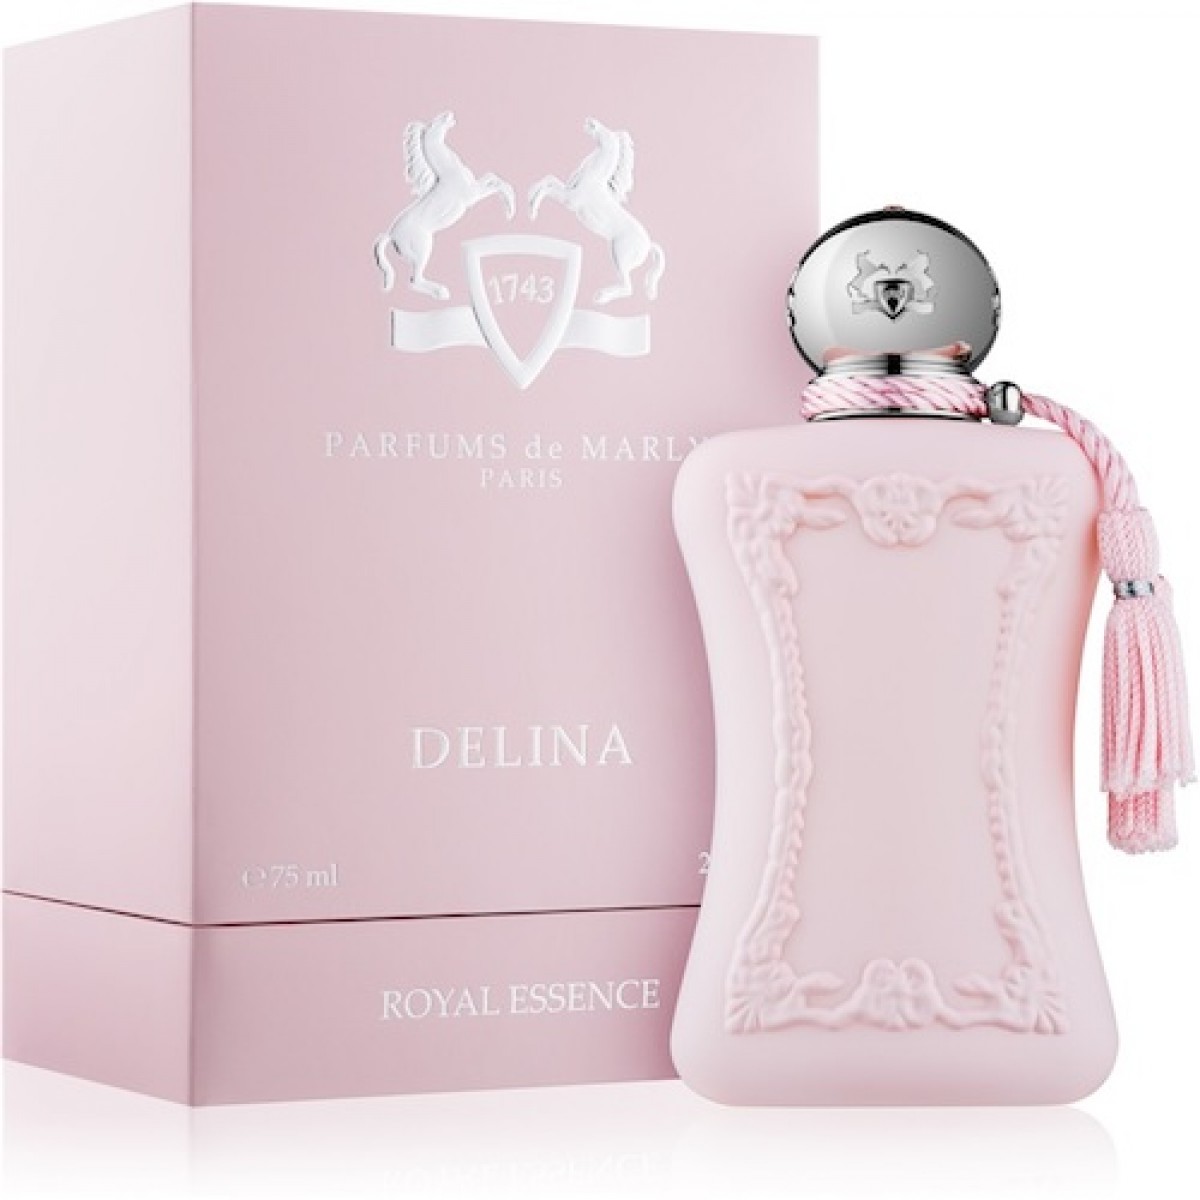 Купить Парфюмерная вода Parfums De Marly, Parfums De Marly Delina 75ml, Франция